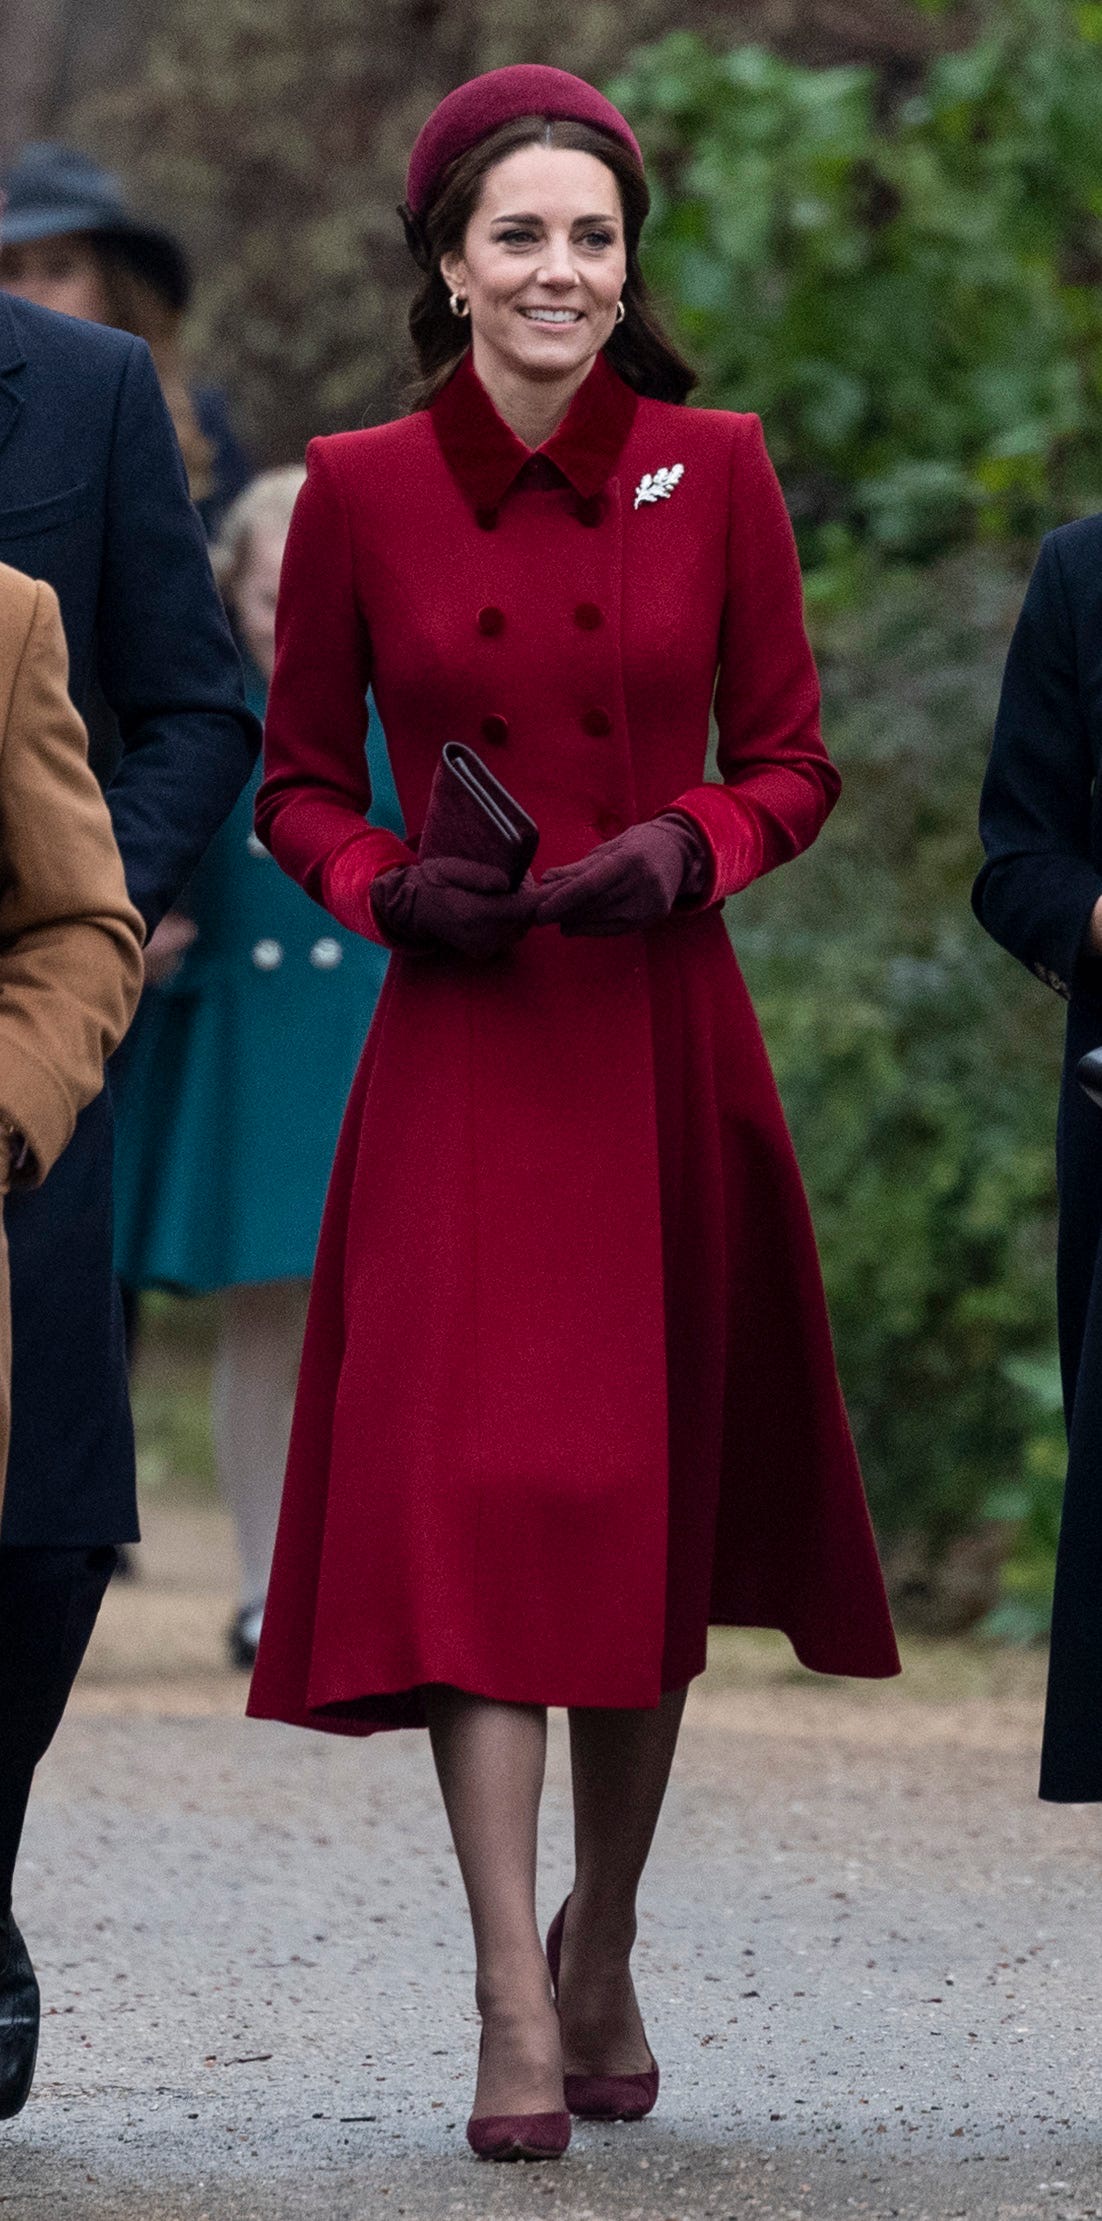 Kate Middleton rạng rỡ trong chiếc áo choàng dài hai hàng cúc, điểm nhấn tay áo, cổ áo bằng nhung màu đỏ sang trọng. Cô nàng thường ưa chuộng phong cách tone-sur-tone.